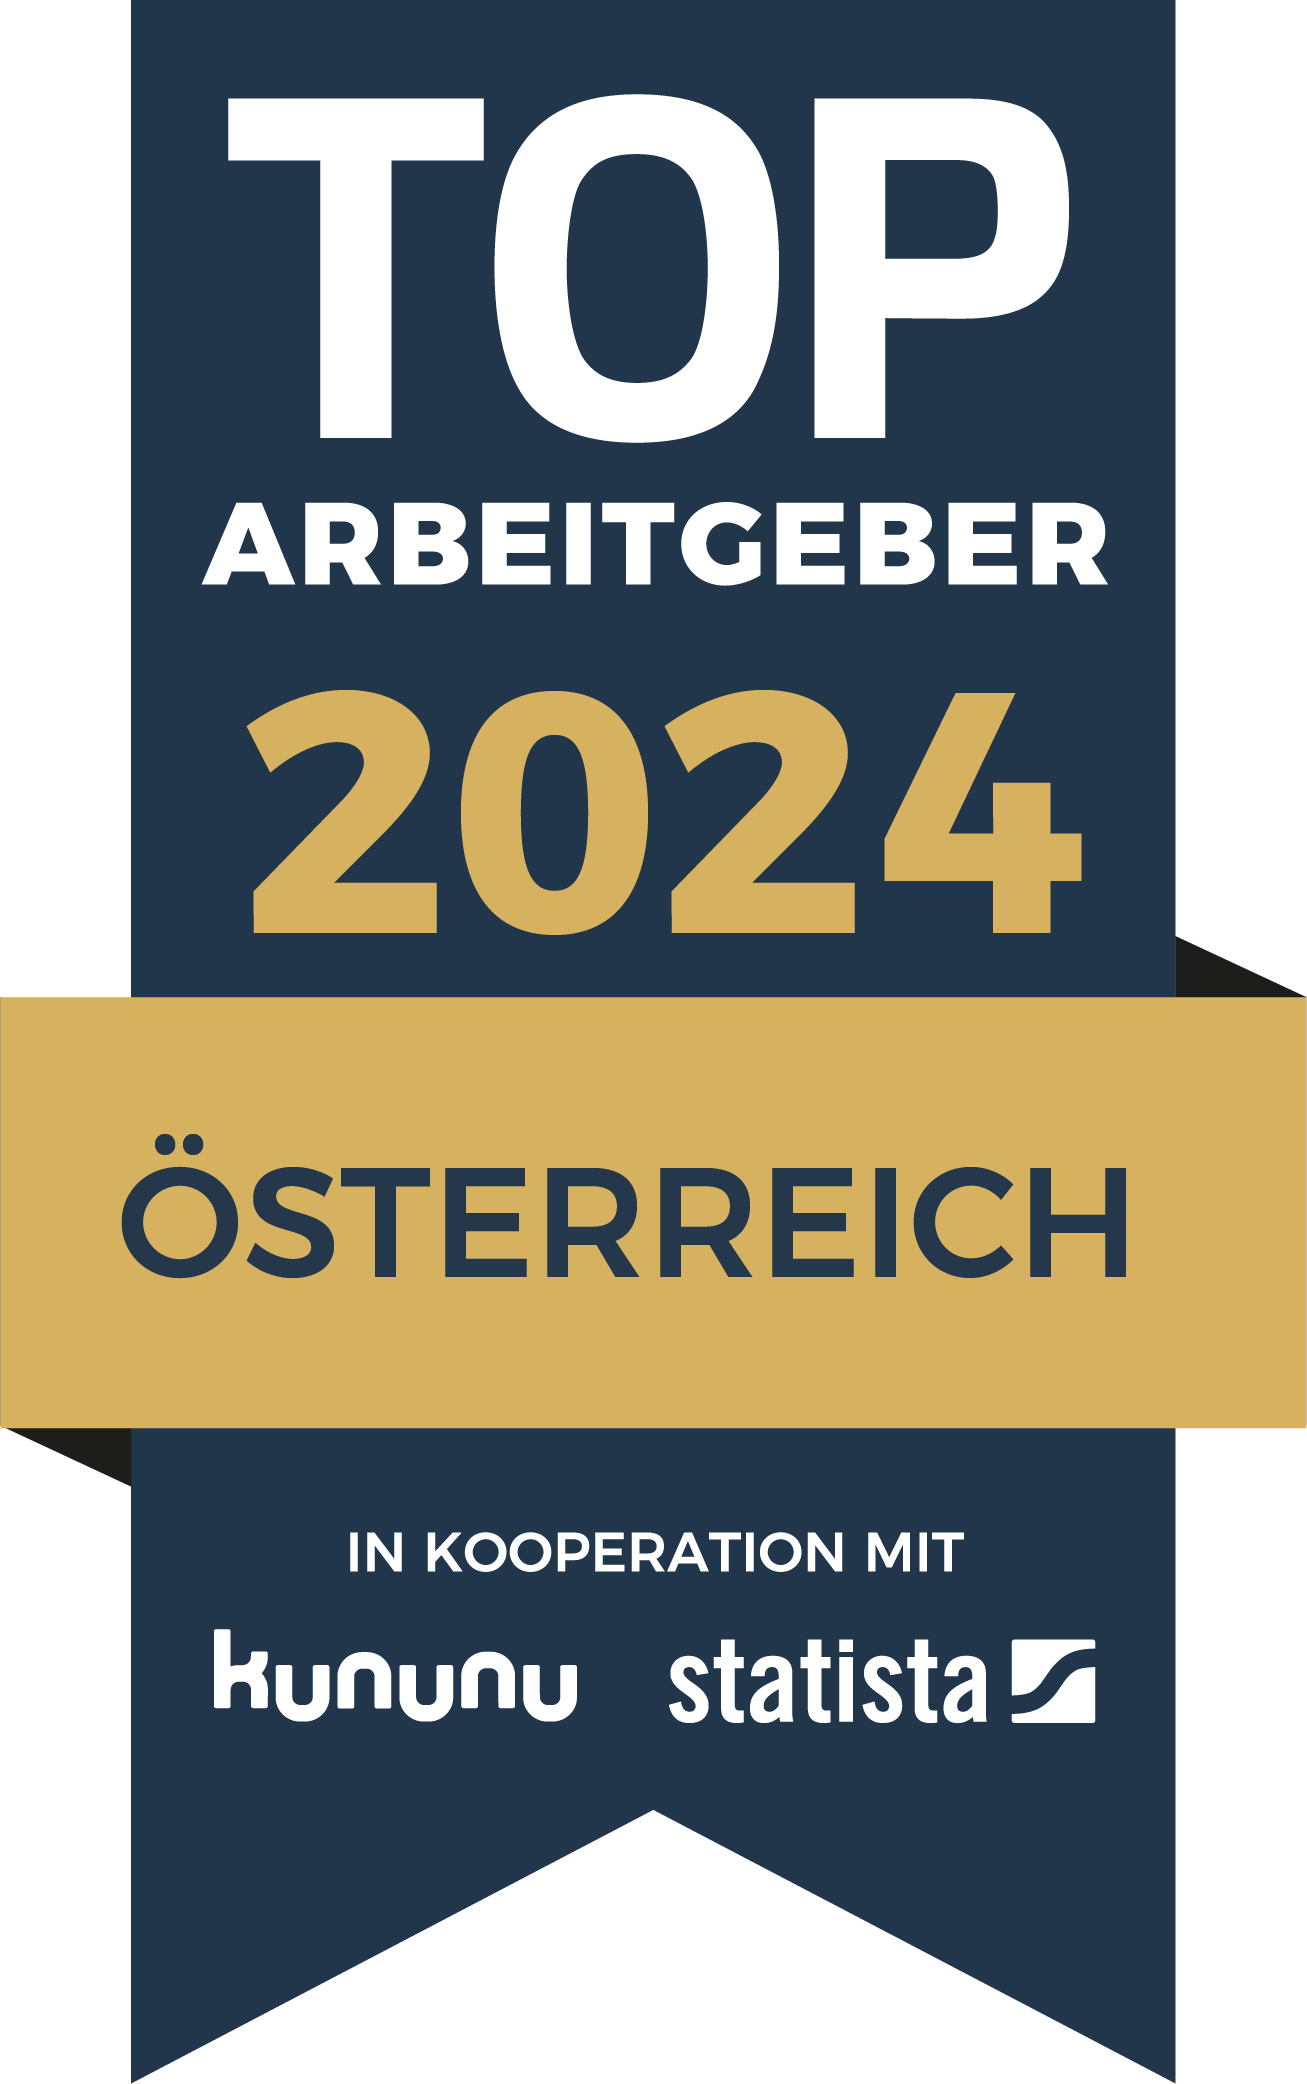 Urkunde "Top Arbeitgeber 2024"